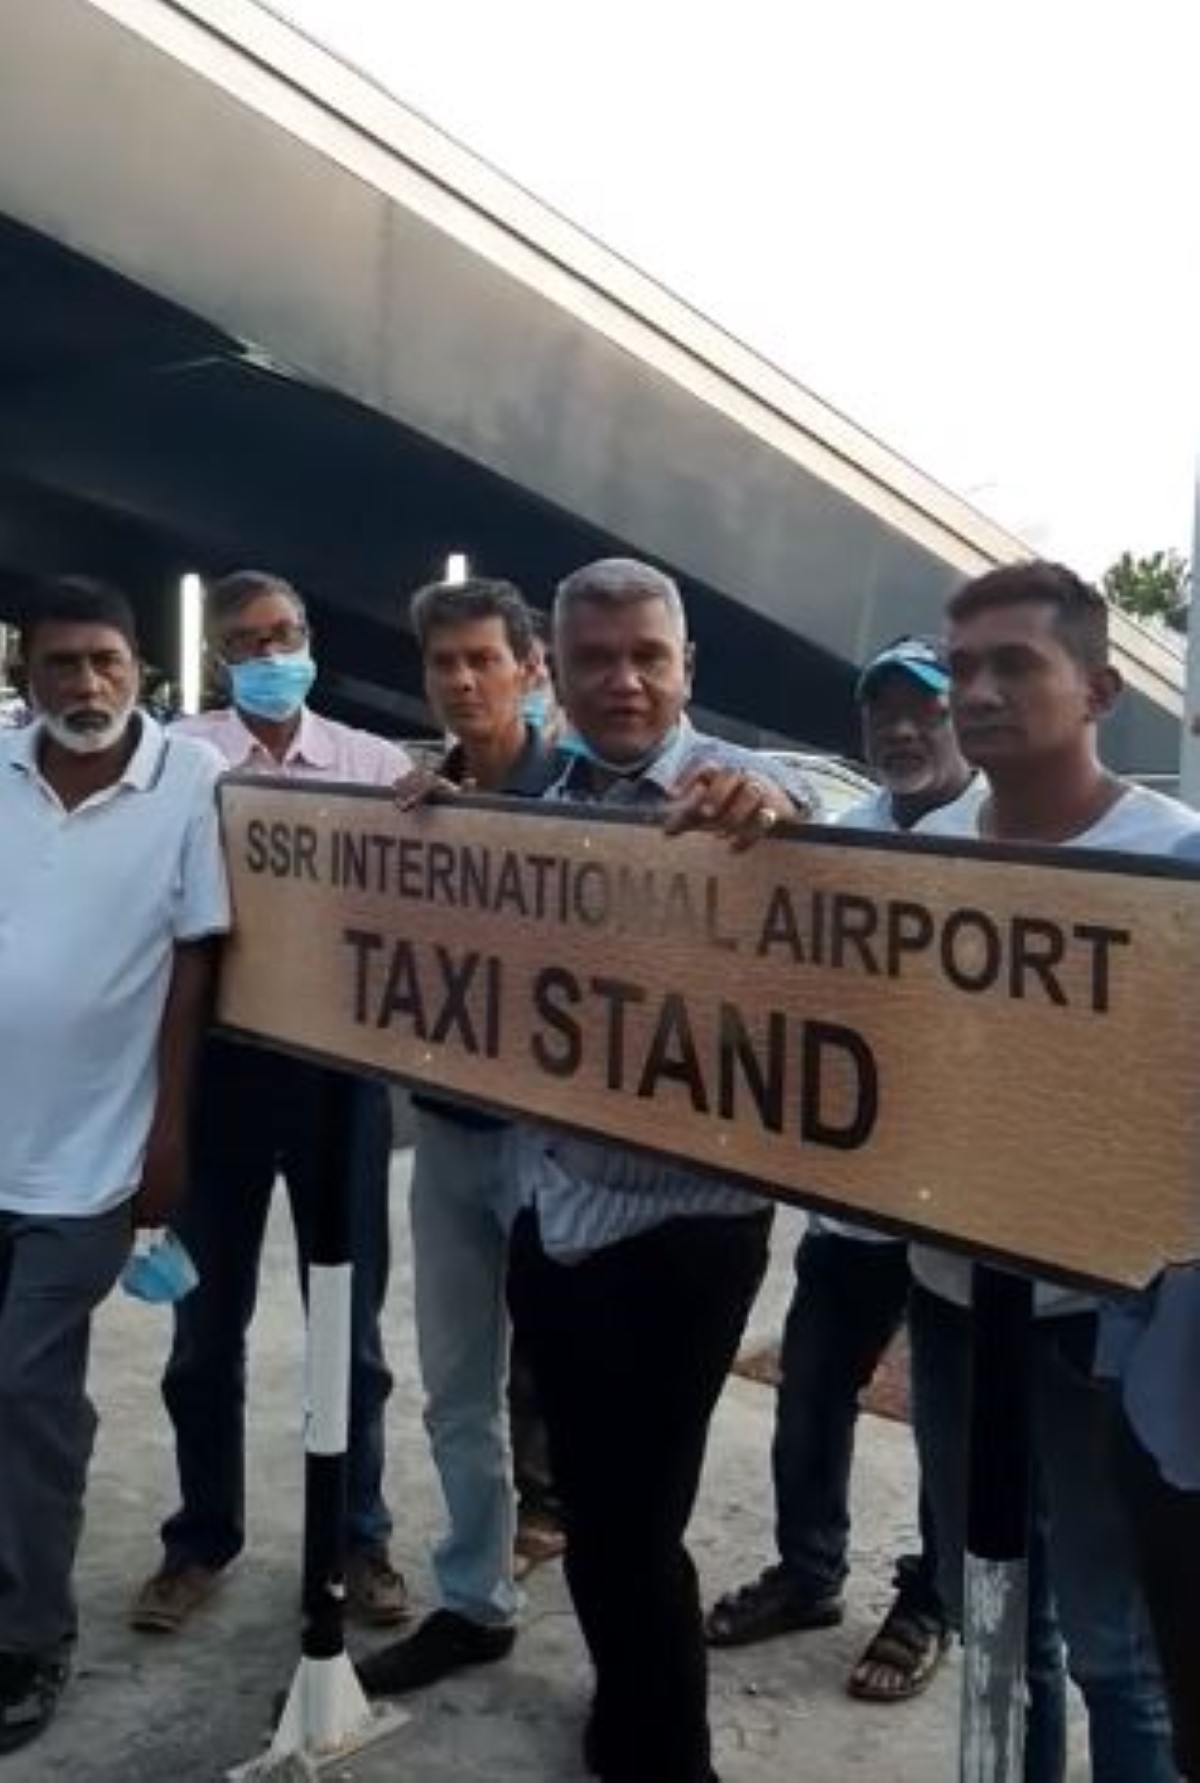  Réouverture contrôlée des frontières: Les chauffeurs de l’aéroport sont furieux